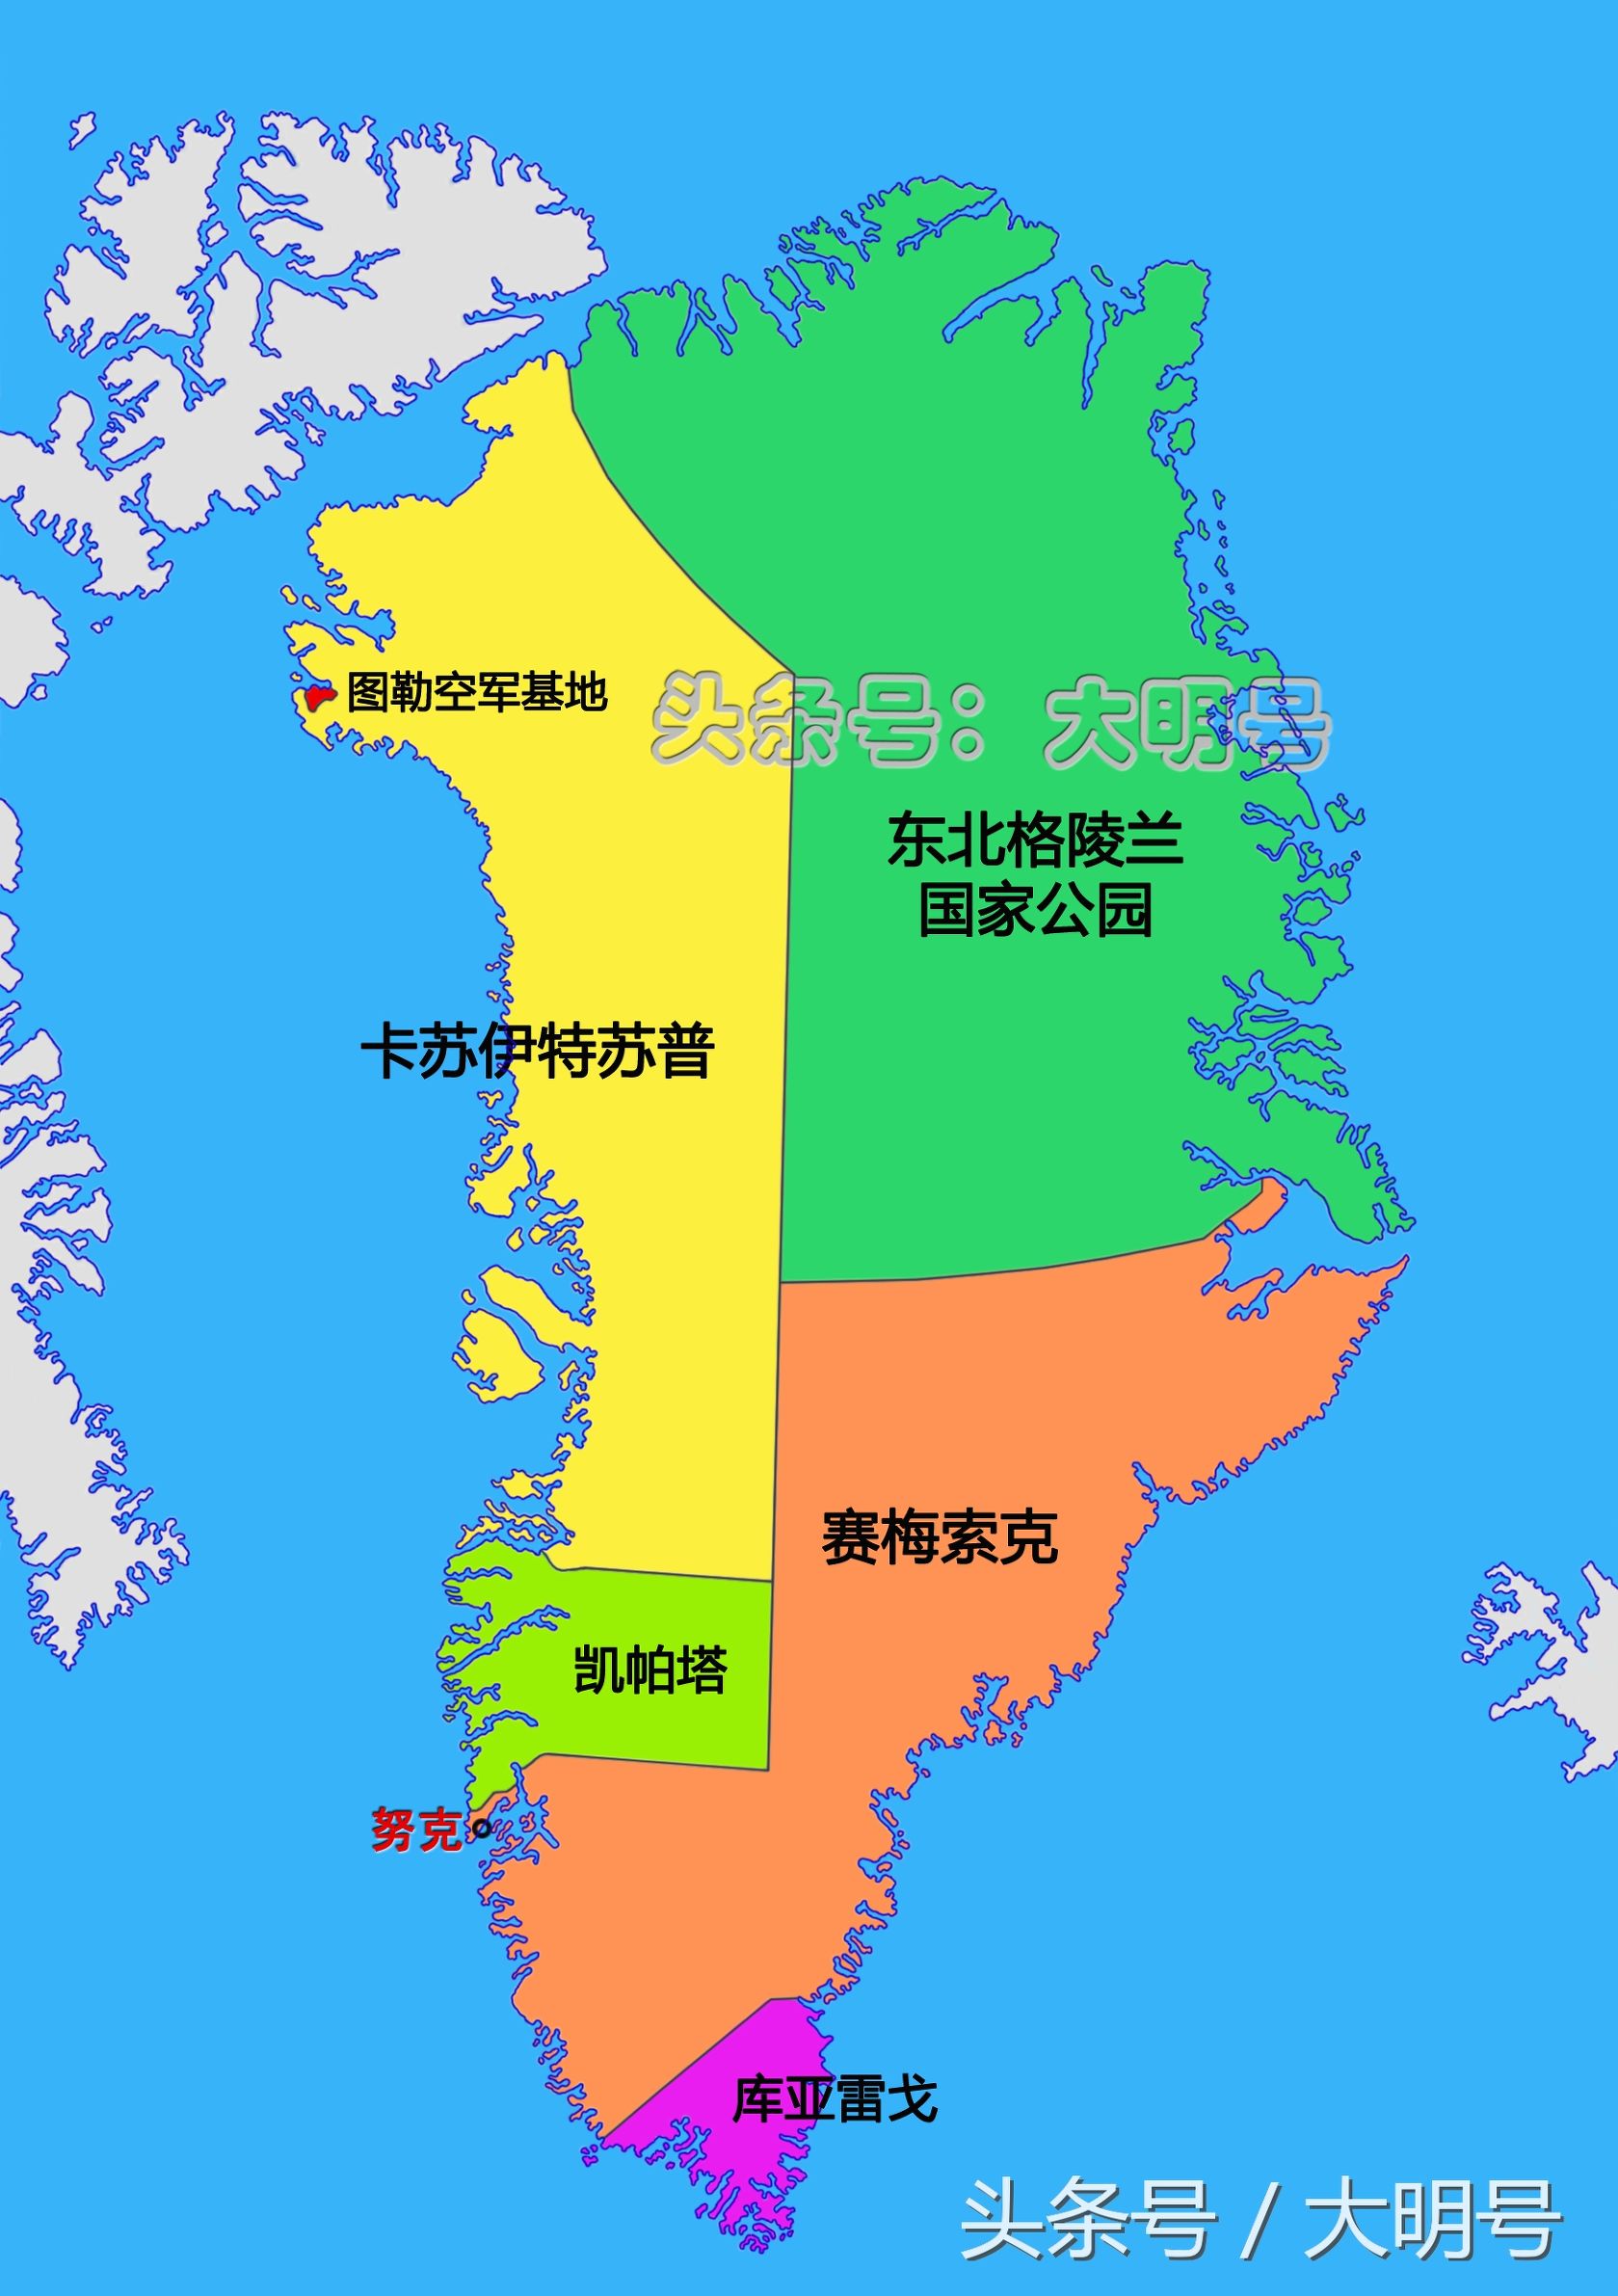 格陵兰岛为何属于丹麦，为何不计算入丹麦国土面积？